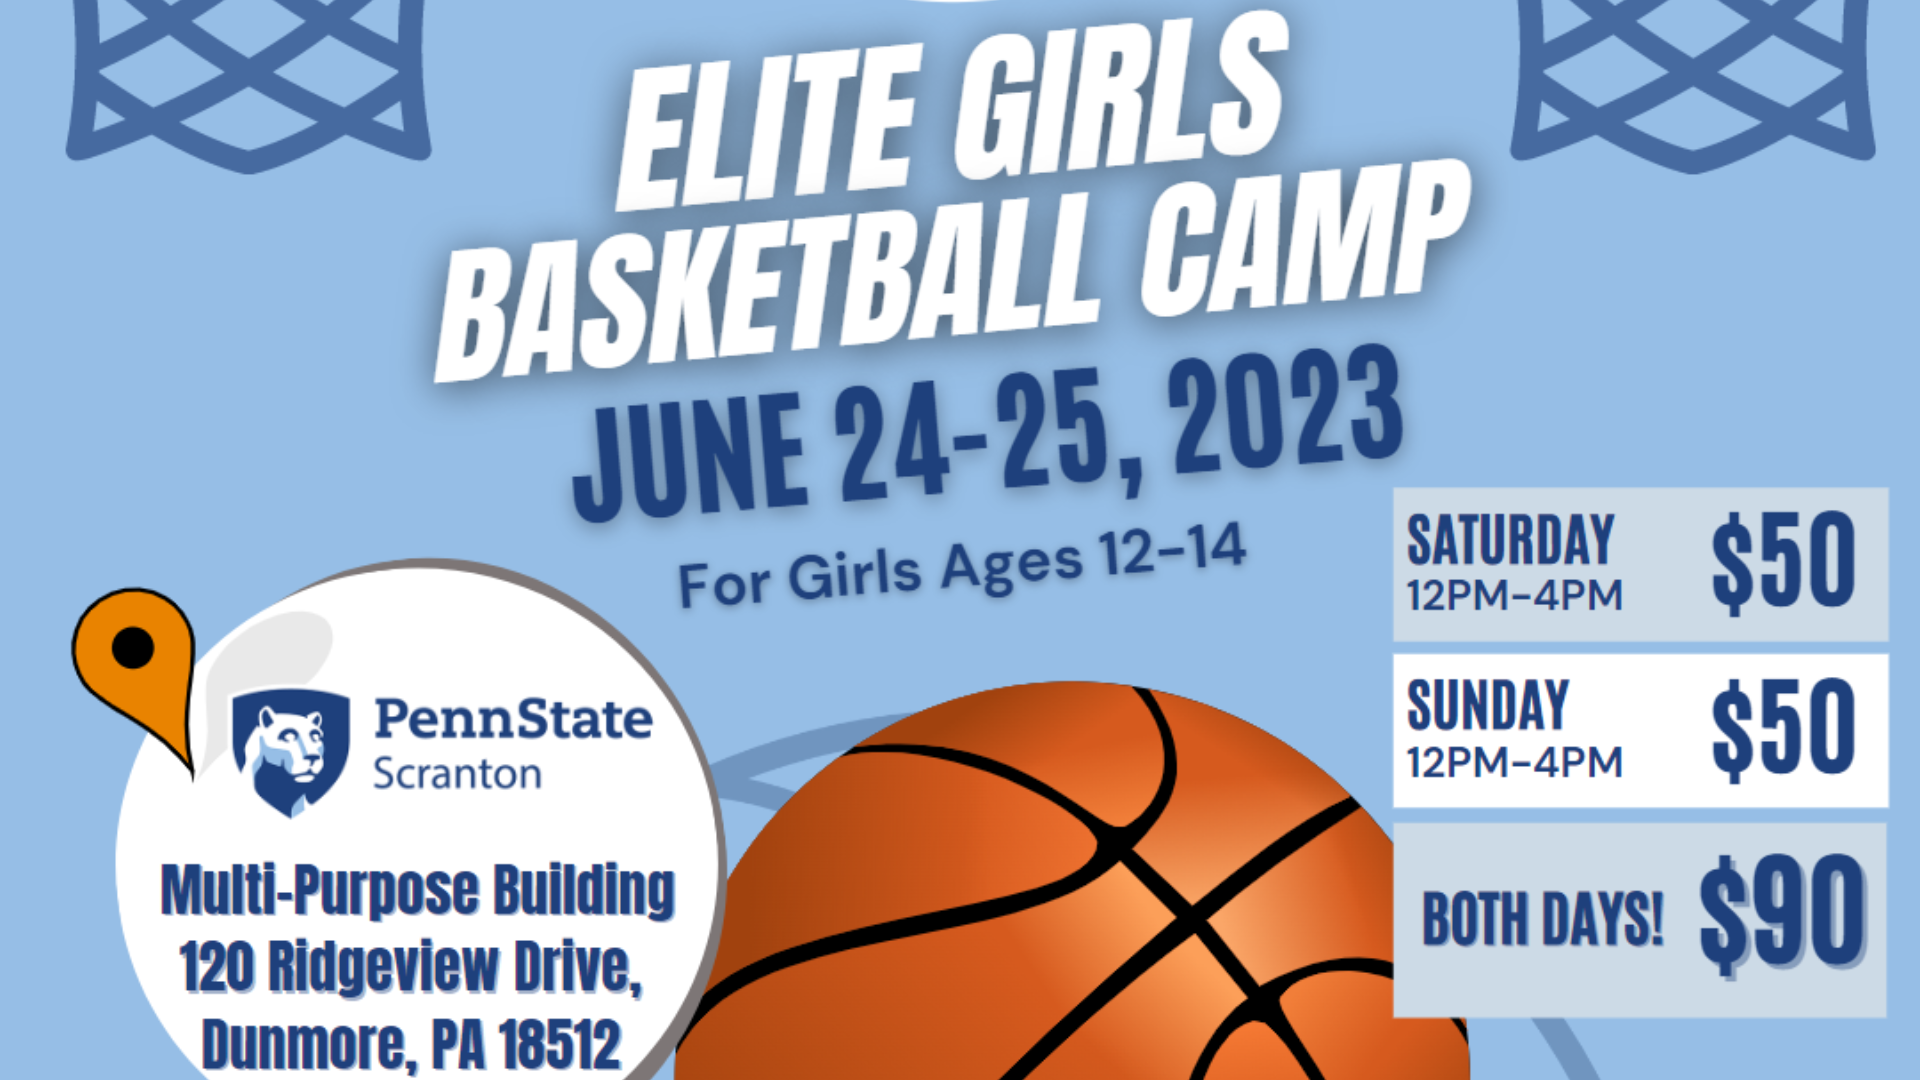 Registration flyer for Elite Girls Basketball camp